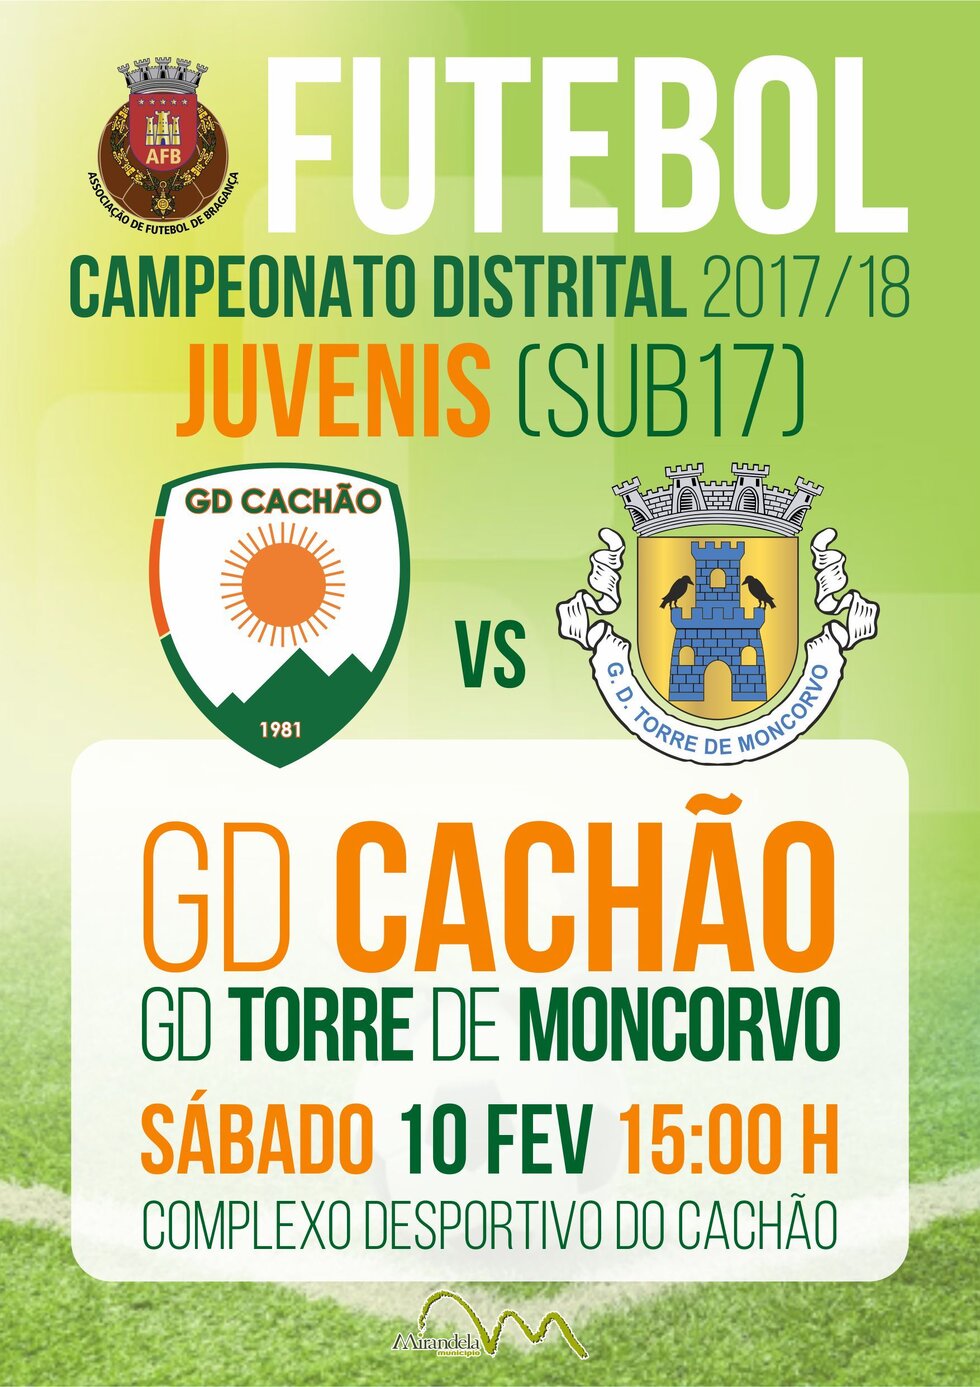 cartaz_jogo_futebol_camp_distrital_de_juvenis_GD_Cach_o_vs_GD_Torre_Moncorvo_fev_18